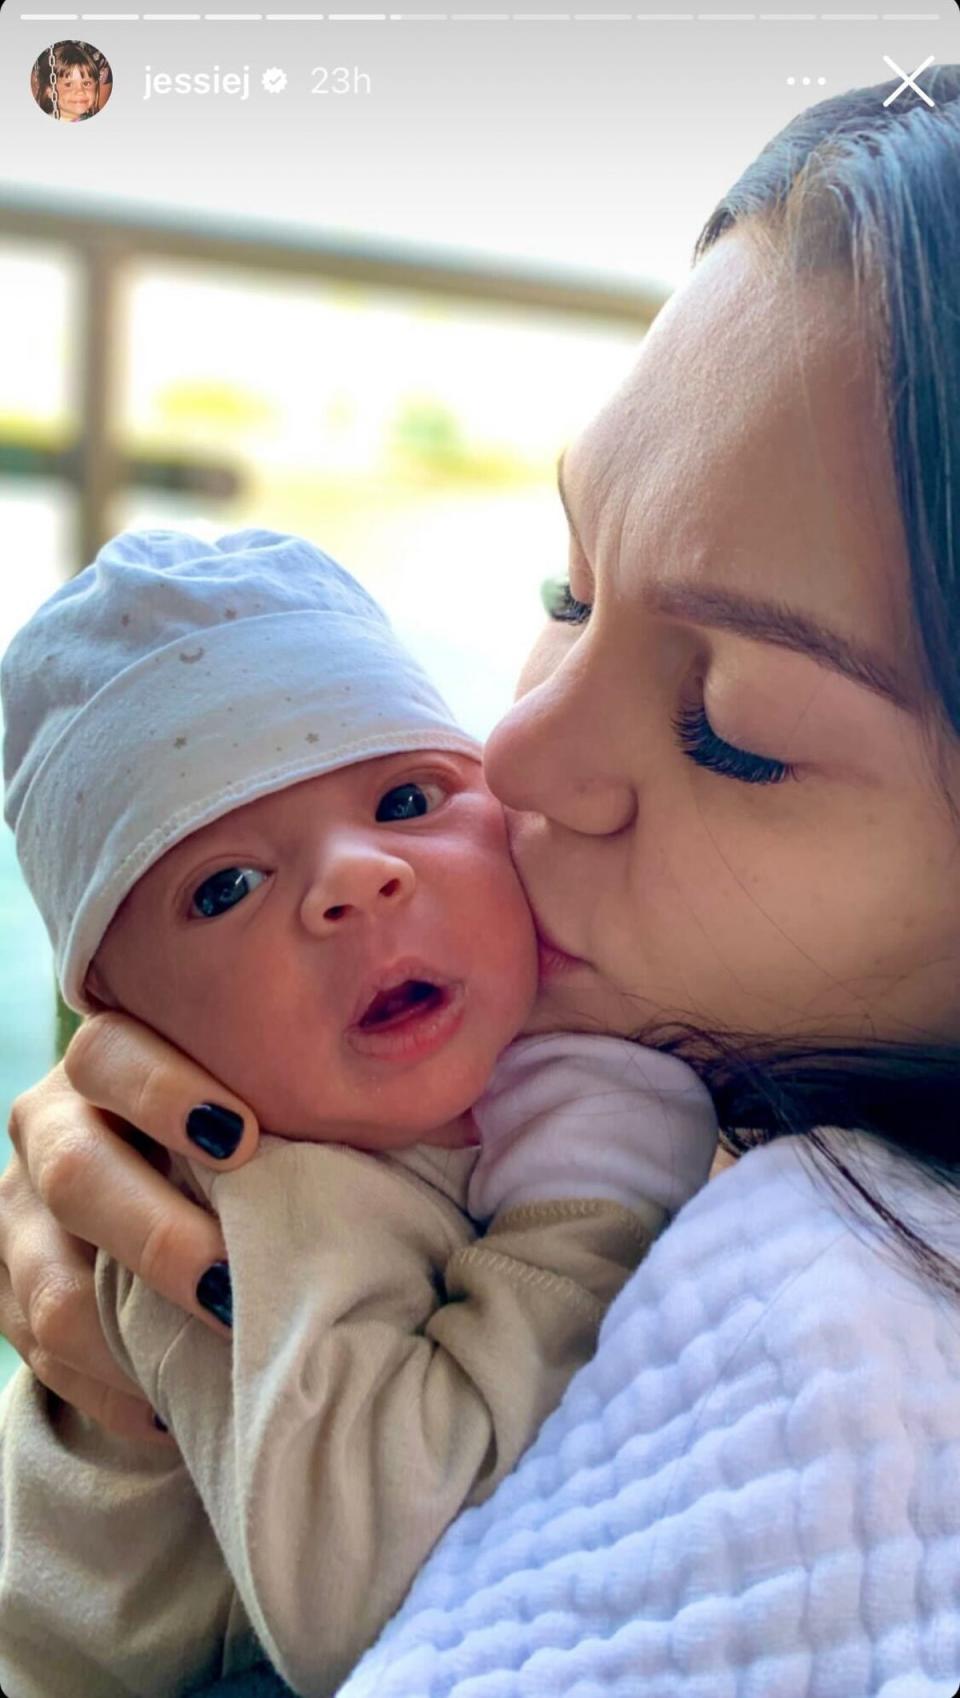 Jessie J plants a kiss on her newborn son Sky’s cheek (Instagram/Jessie J)